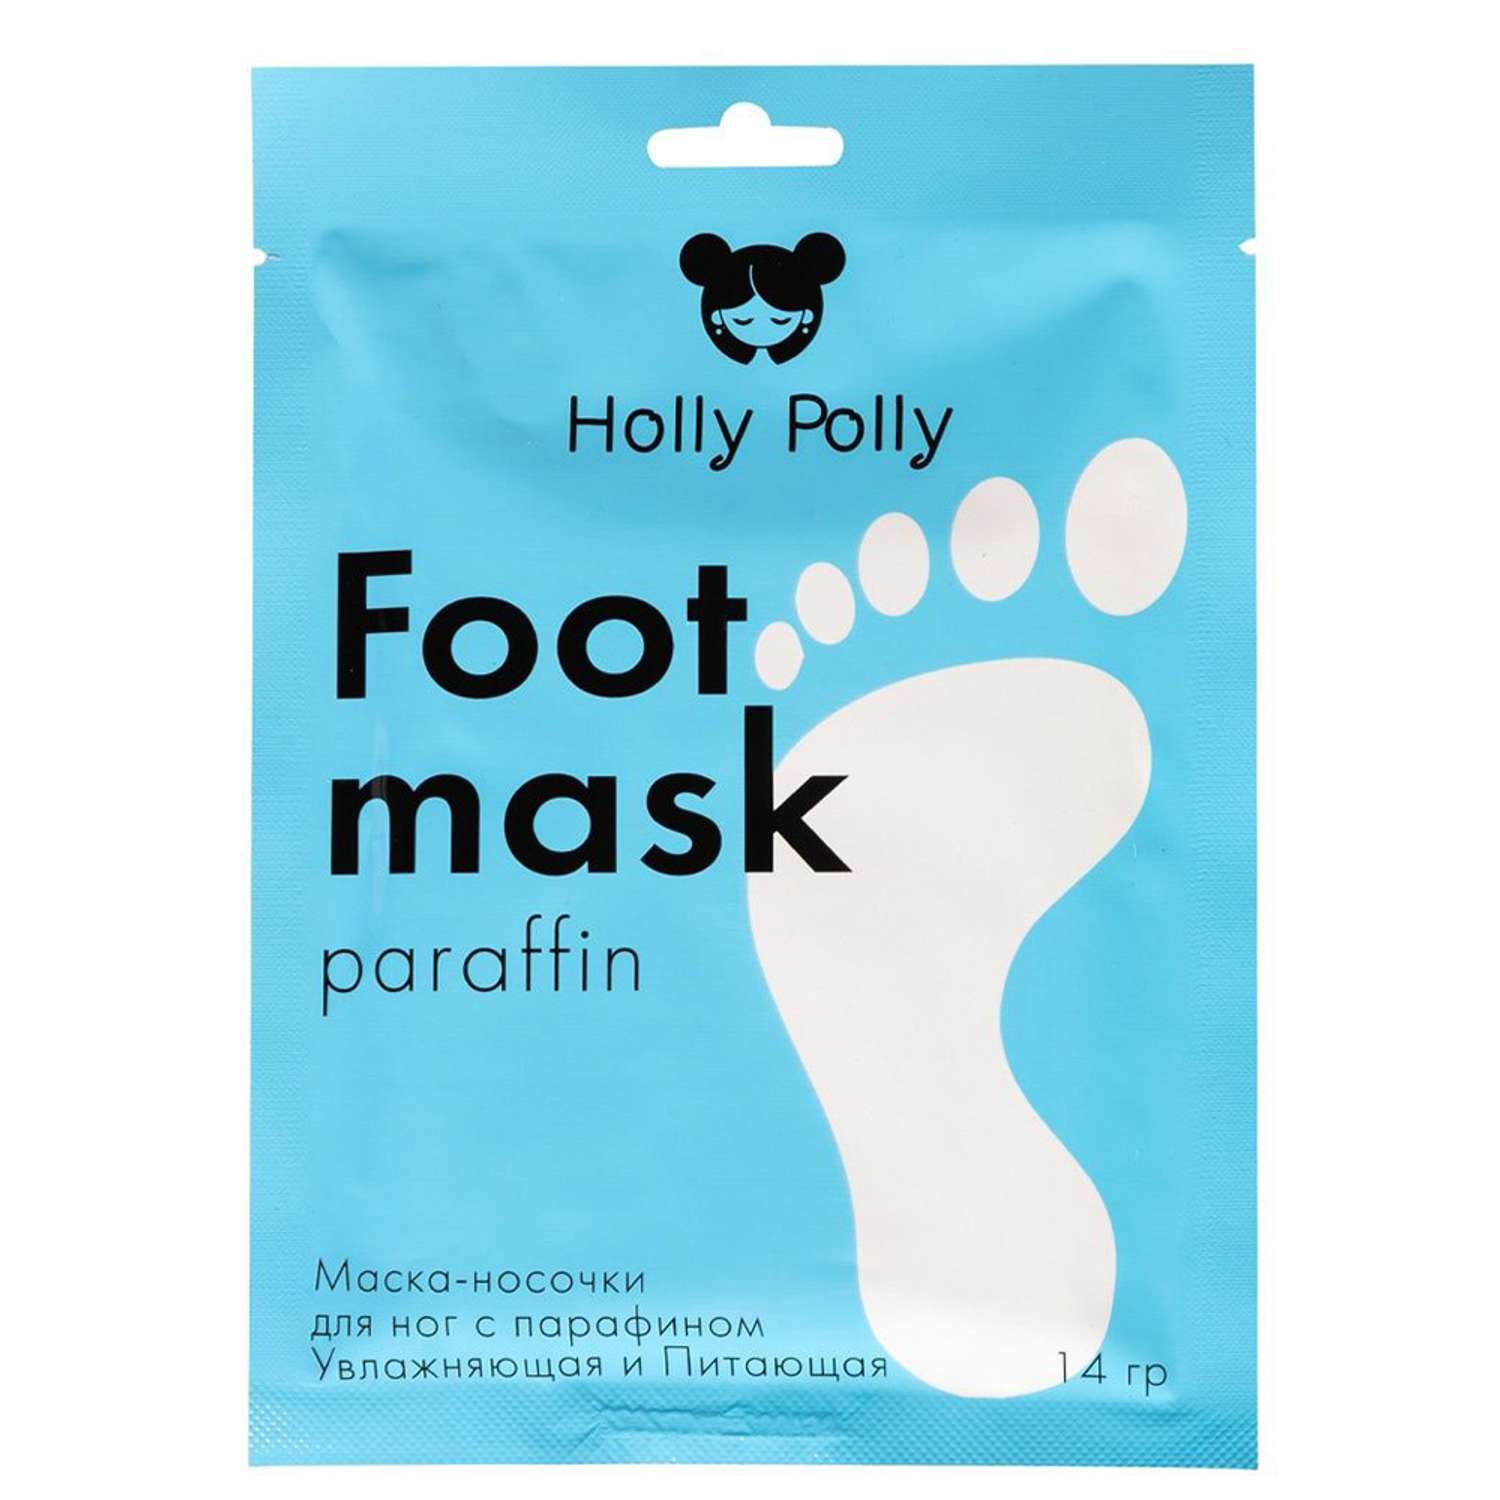 Маска-носочки Holly Polly для ног c парафином увлажняющая и питающая 14гр - фото 1